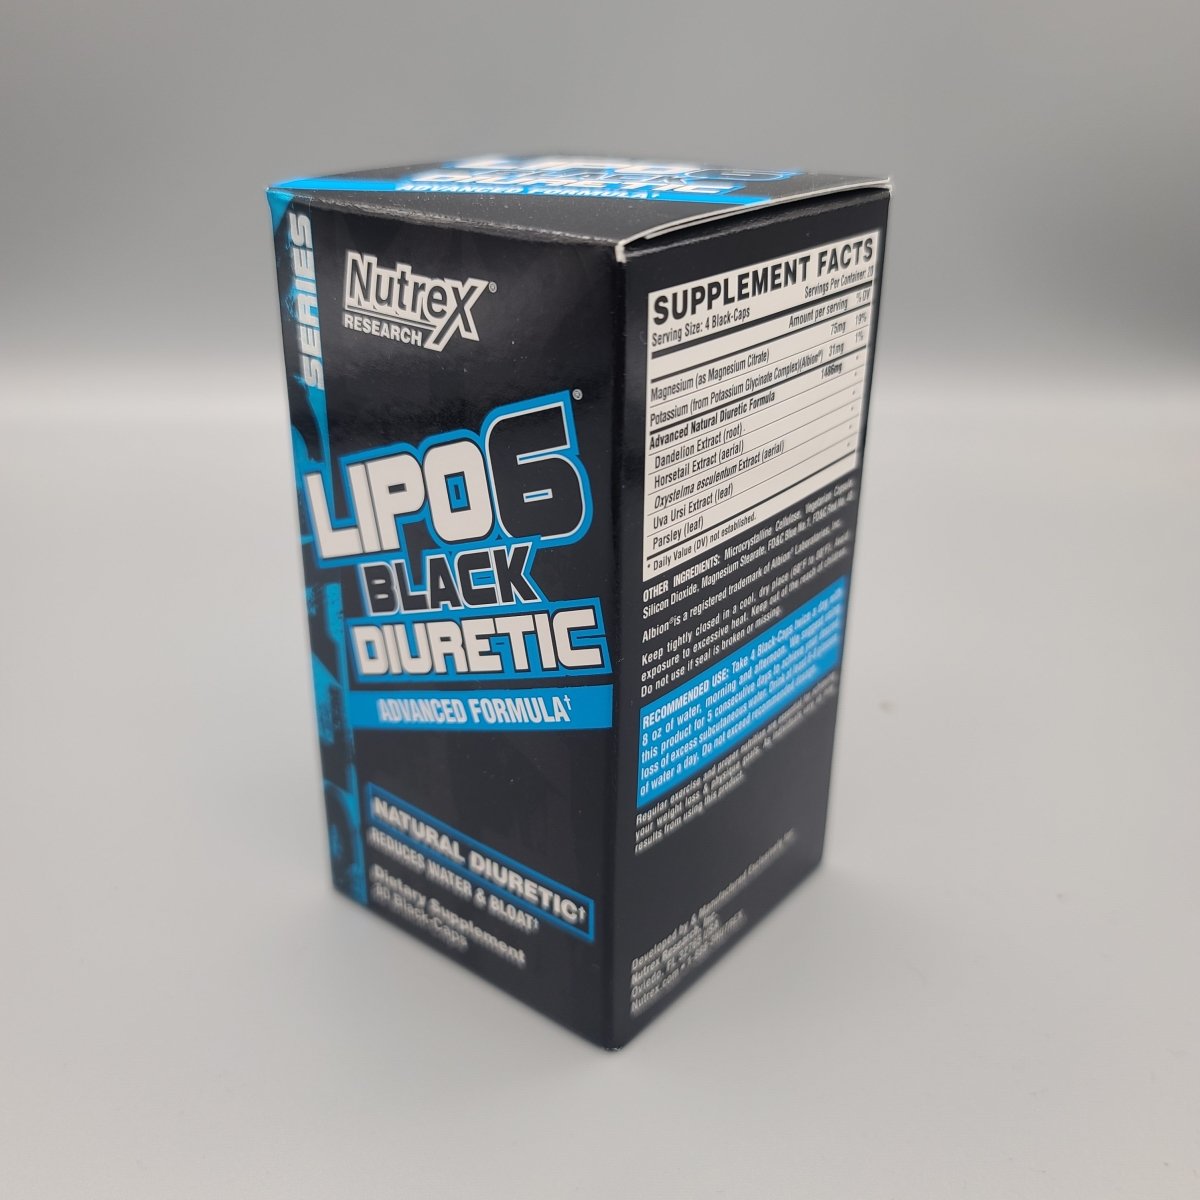 Lipo 6 - Black - Diuretic - Reduces Water & Bloat - 60 Black Capsules